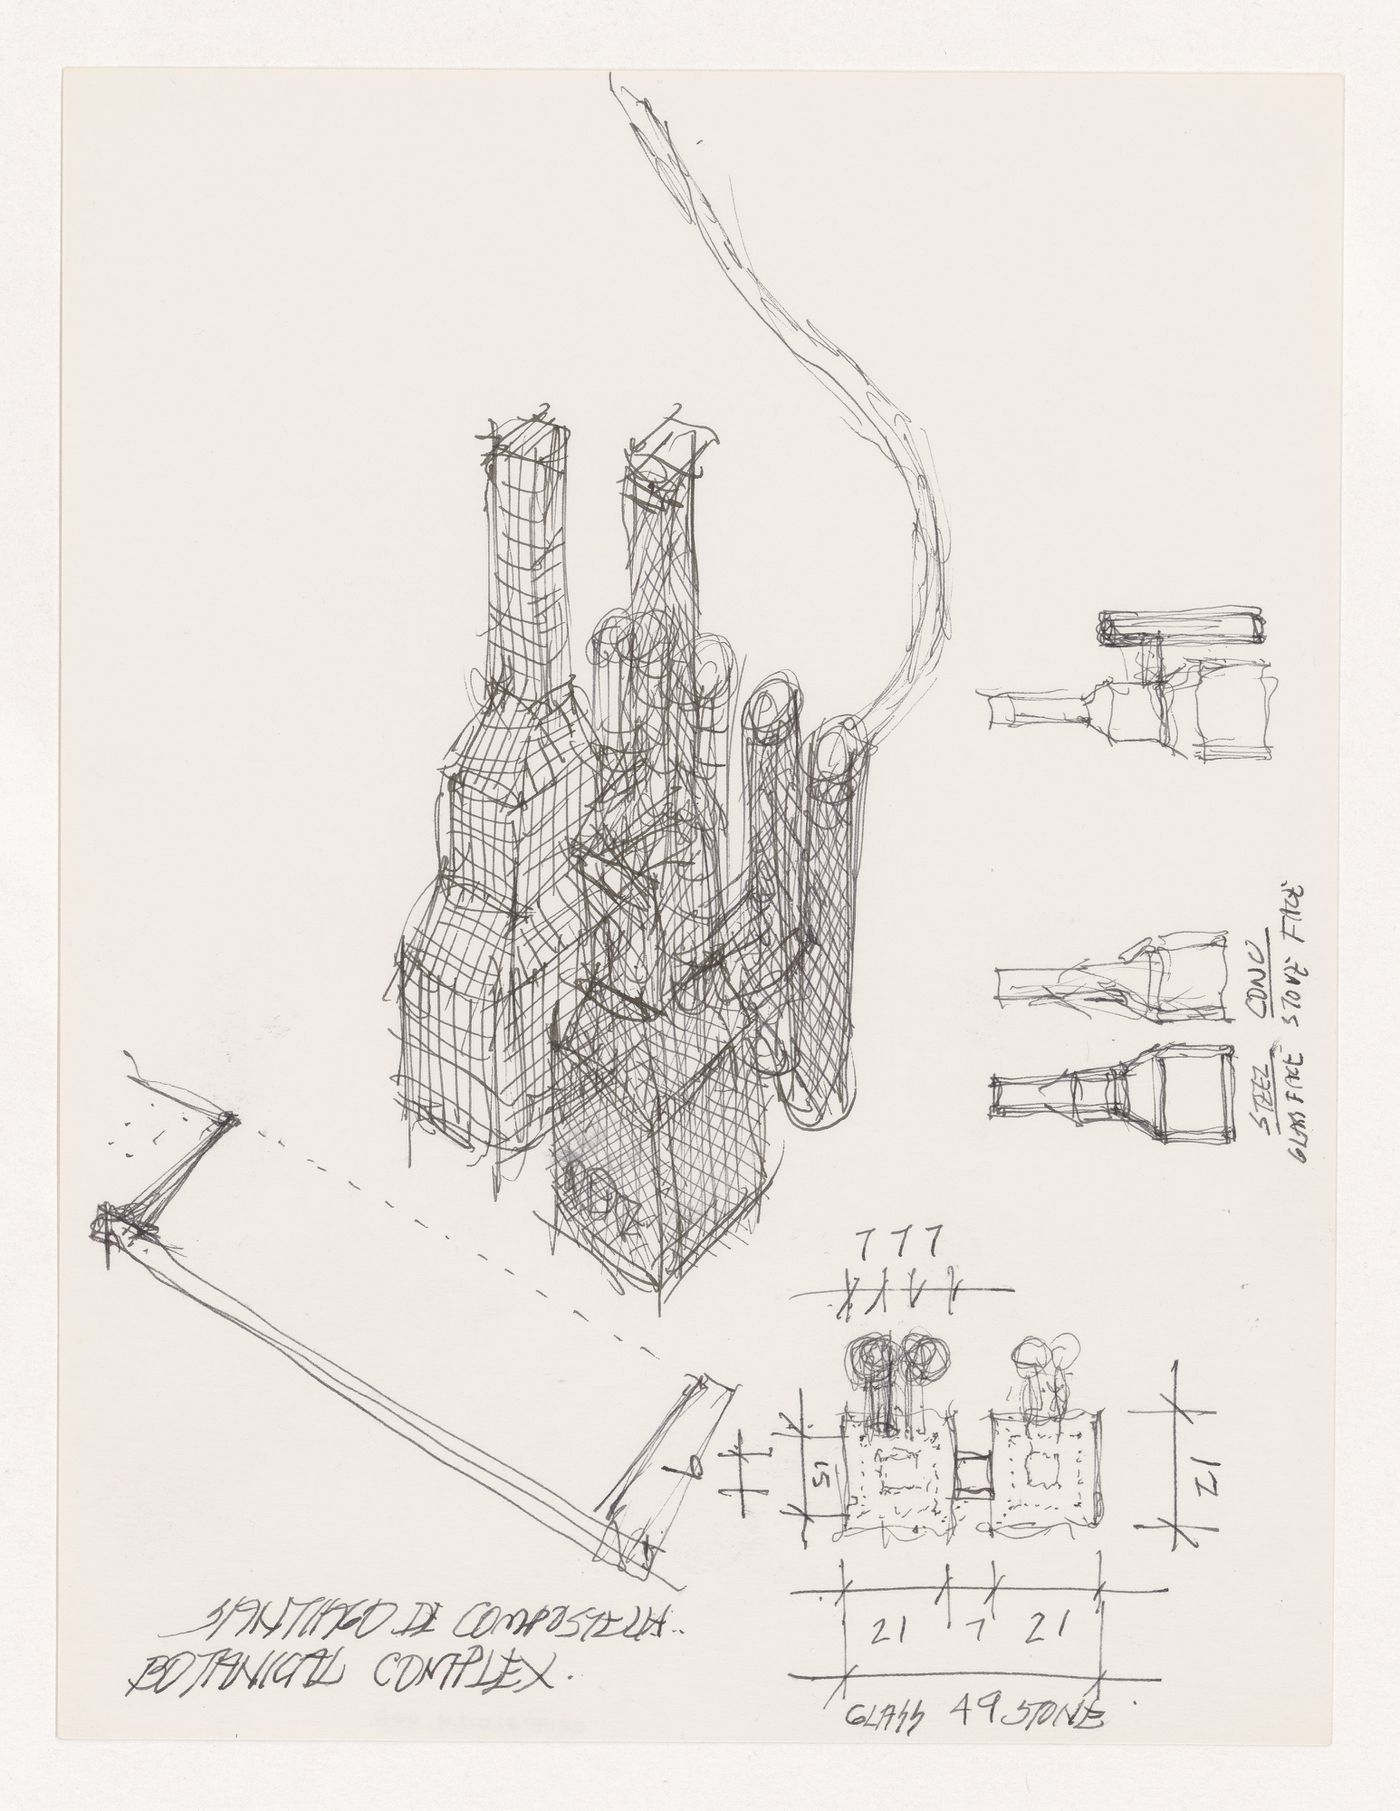 Axonometric, plan, and elevations for Santiago de Compostela Botanical Complex, Santiago de Compostela, Spain